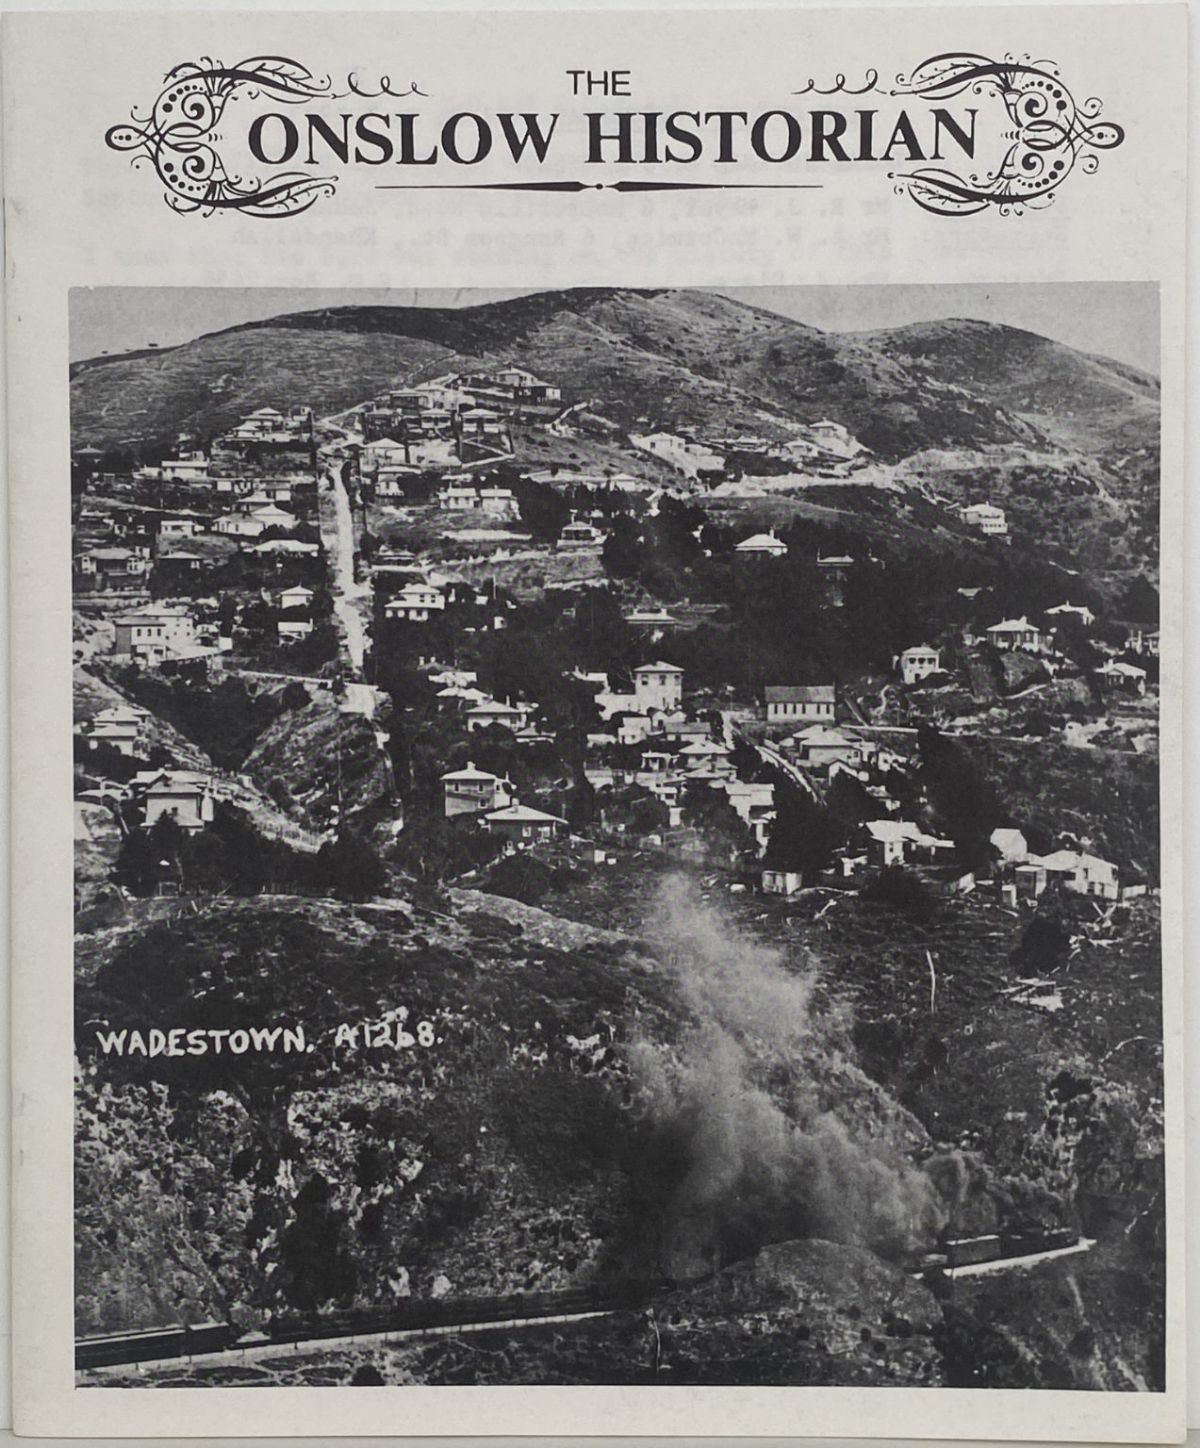 THE ONSLOW HISTORIAN: Vol. 3 - No. 3, 1973